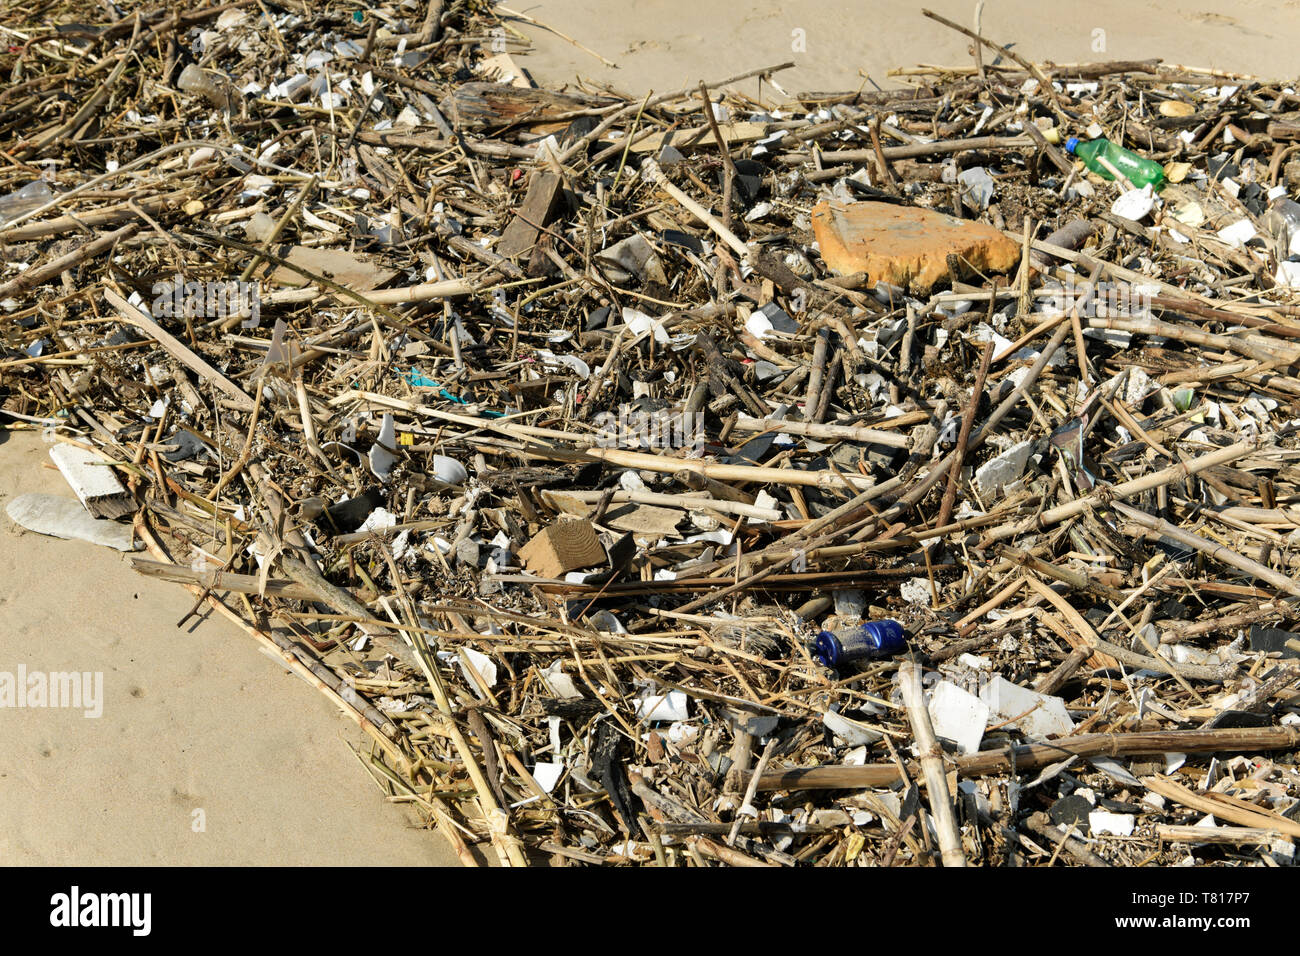 La pollution en plastique, collection de plantes avec des morceaux de polystyrène et d'emballage, Close up, détail, résumé, plage, Durban, Afrique du Sud Banque D'Images